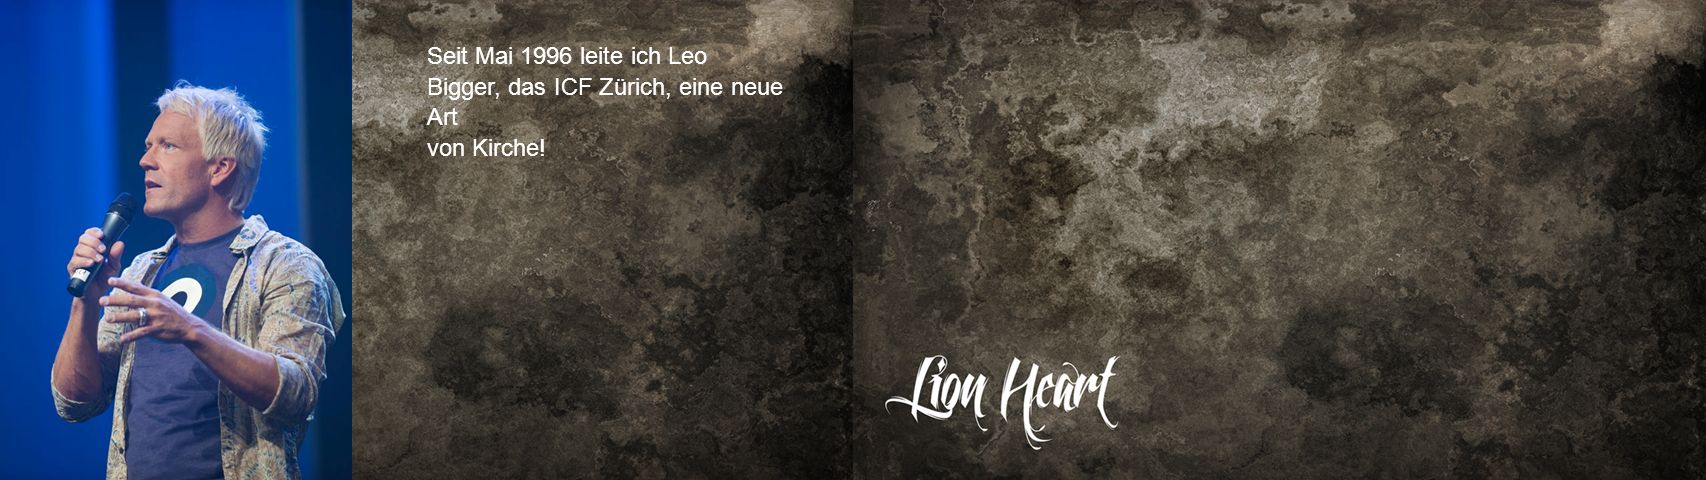 Seit Mai 1996 leite ich Leo Bigger, das ICF Zürich, eine neue Art von Kirche!